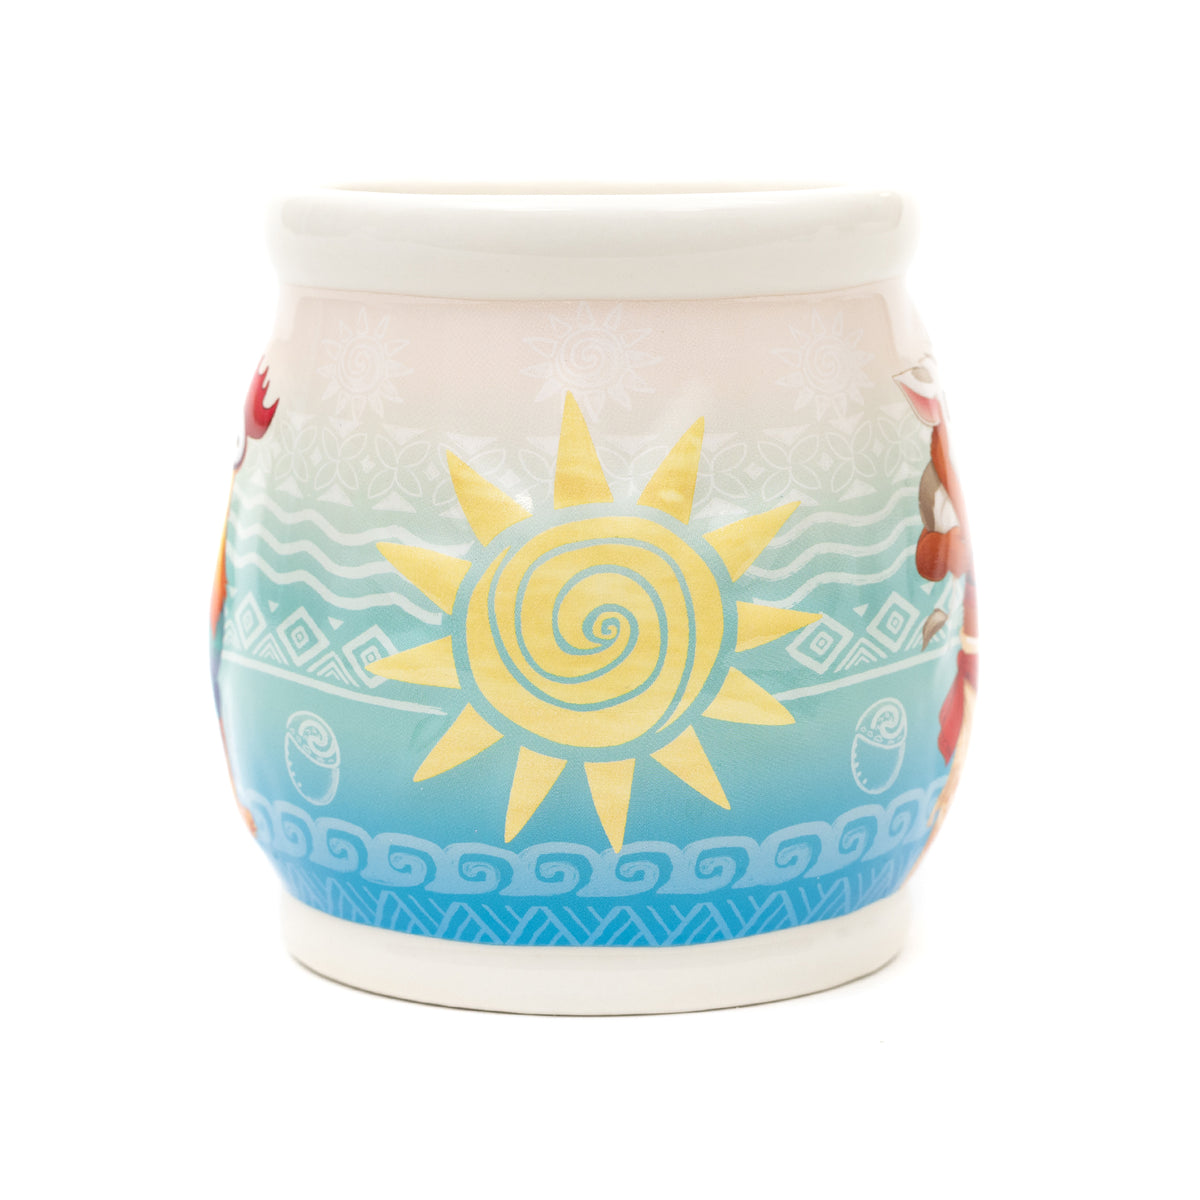 Disney Princess Stories Series 7/12 Moana Ceramic Relief Mug 19oz